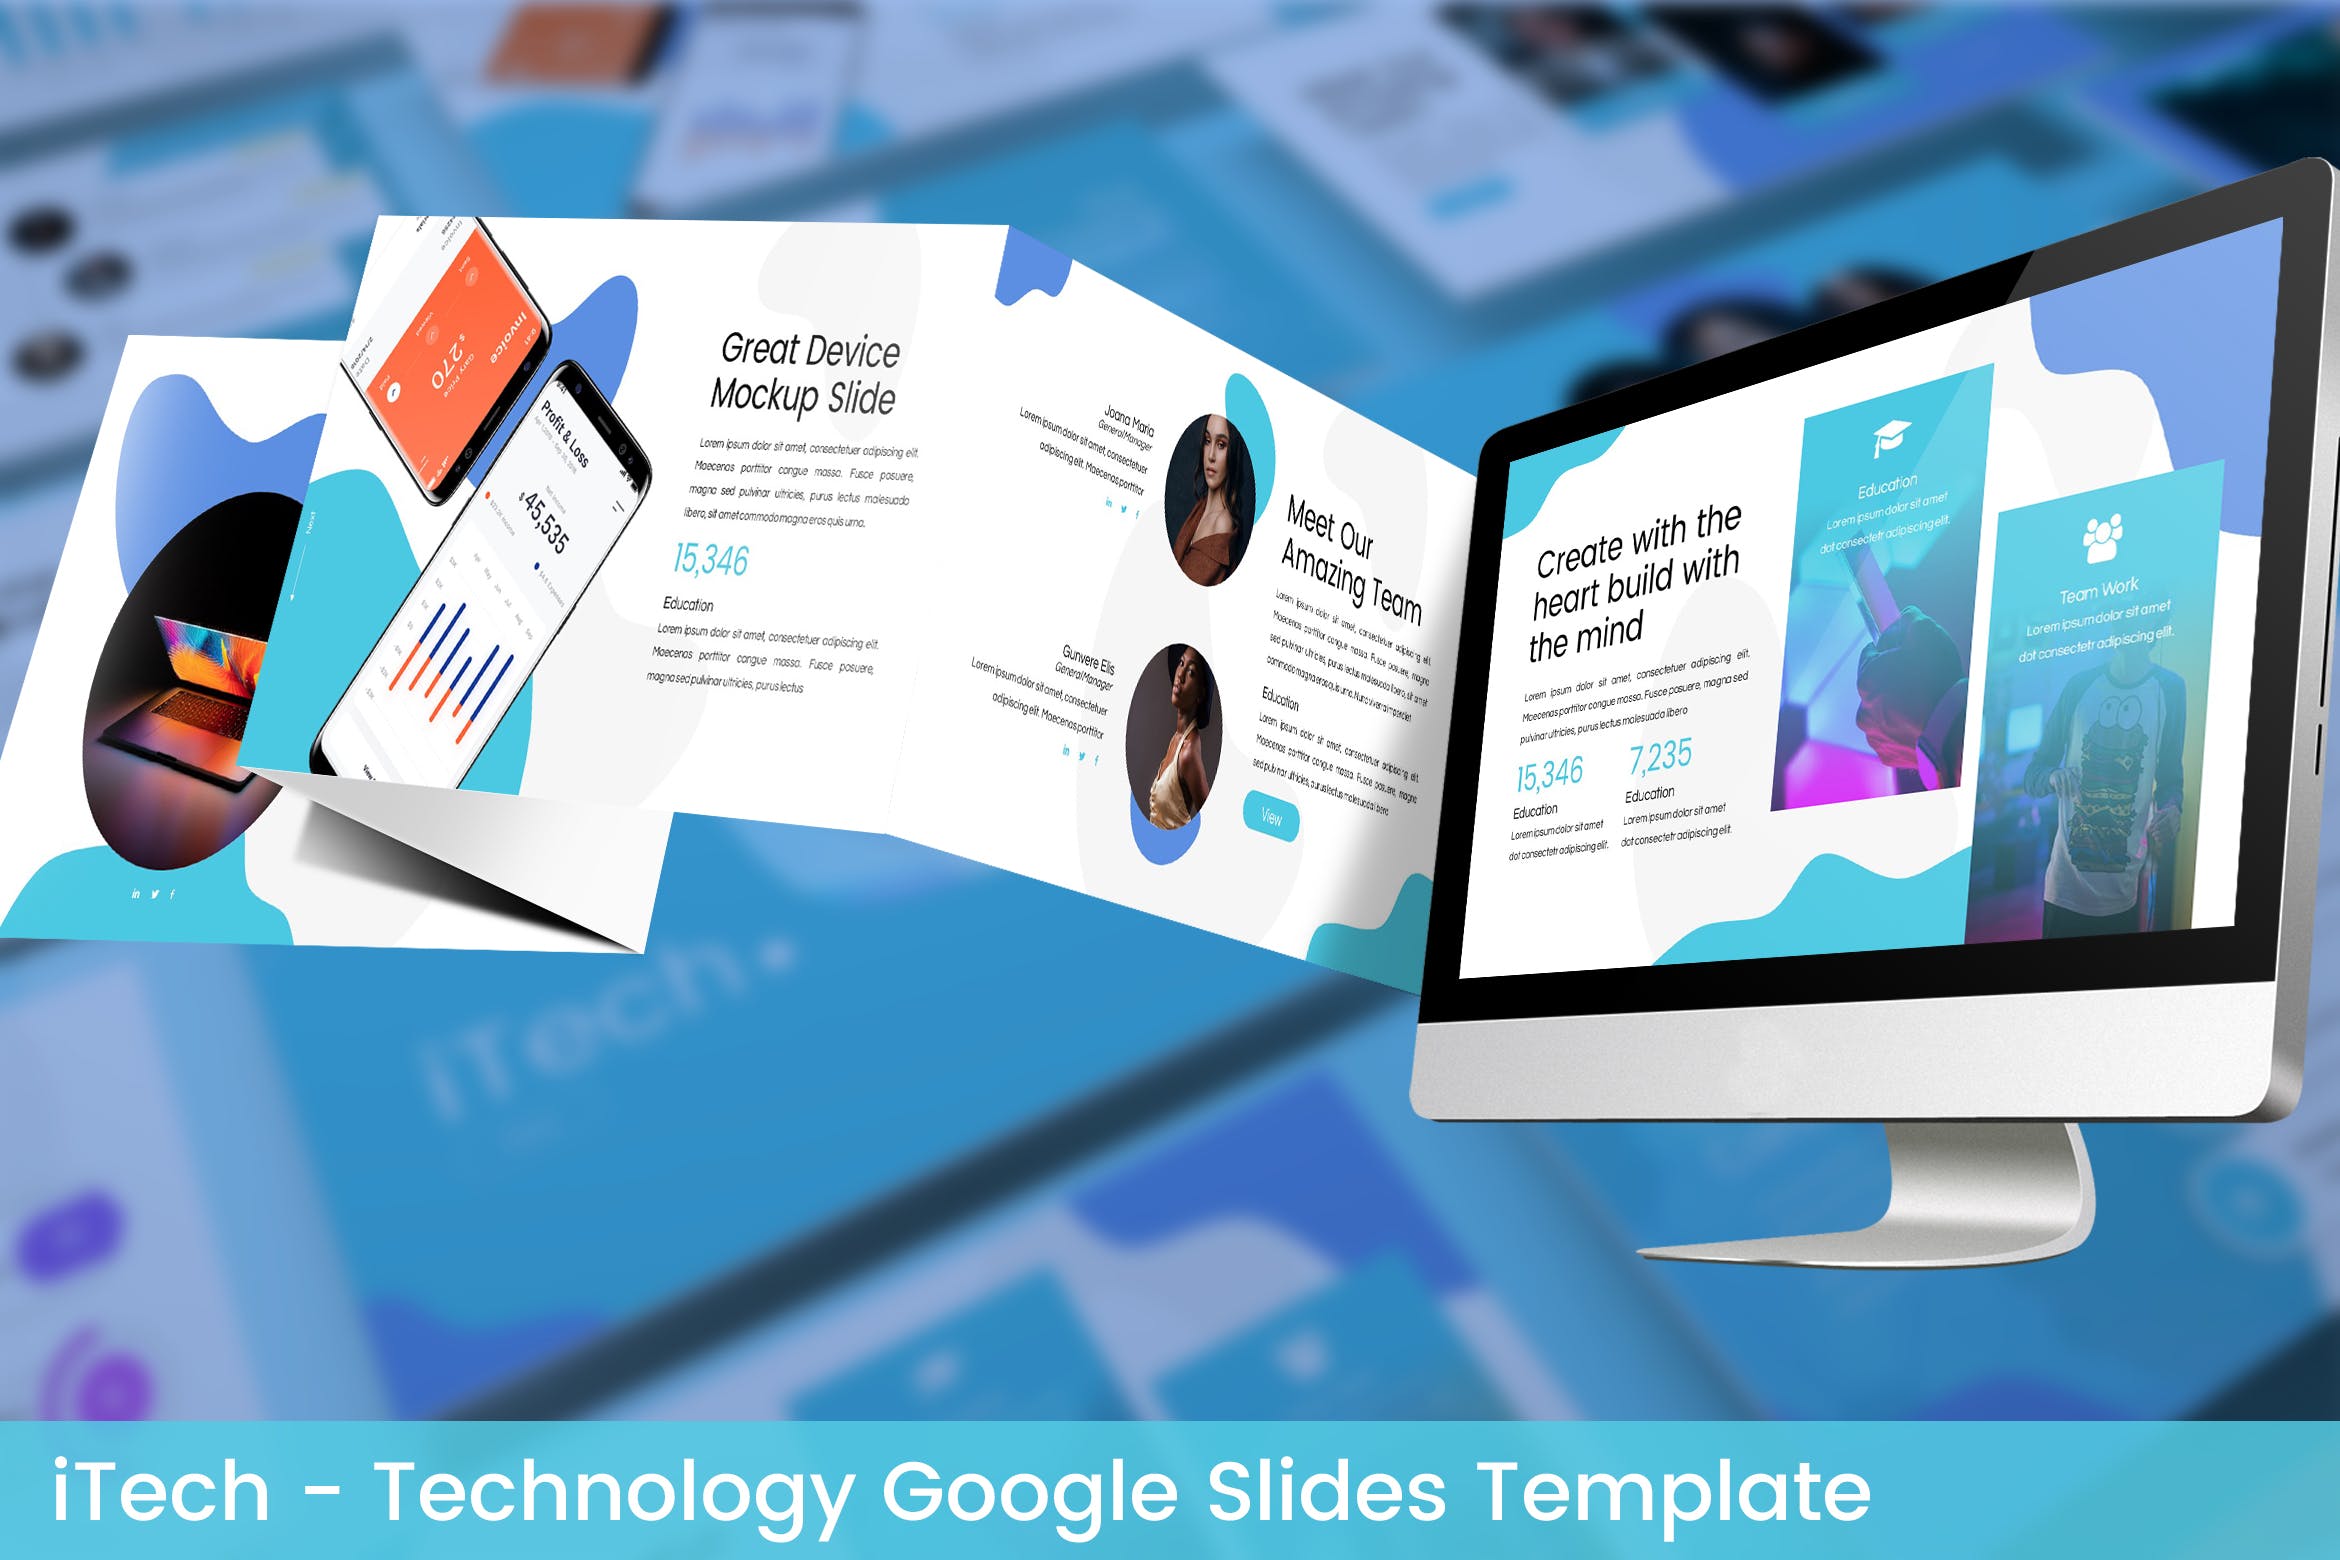 互联网科技公司简介素材库精选谷歌演示模板 iTech – Technology Google Slides Template插图